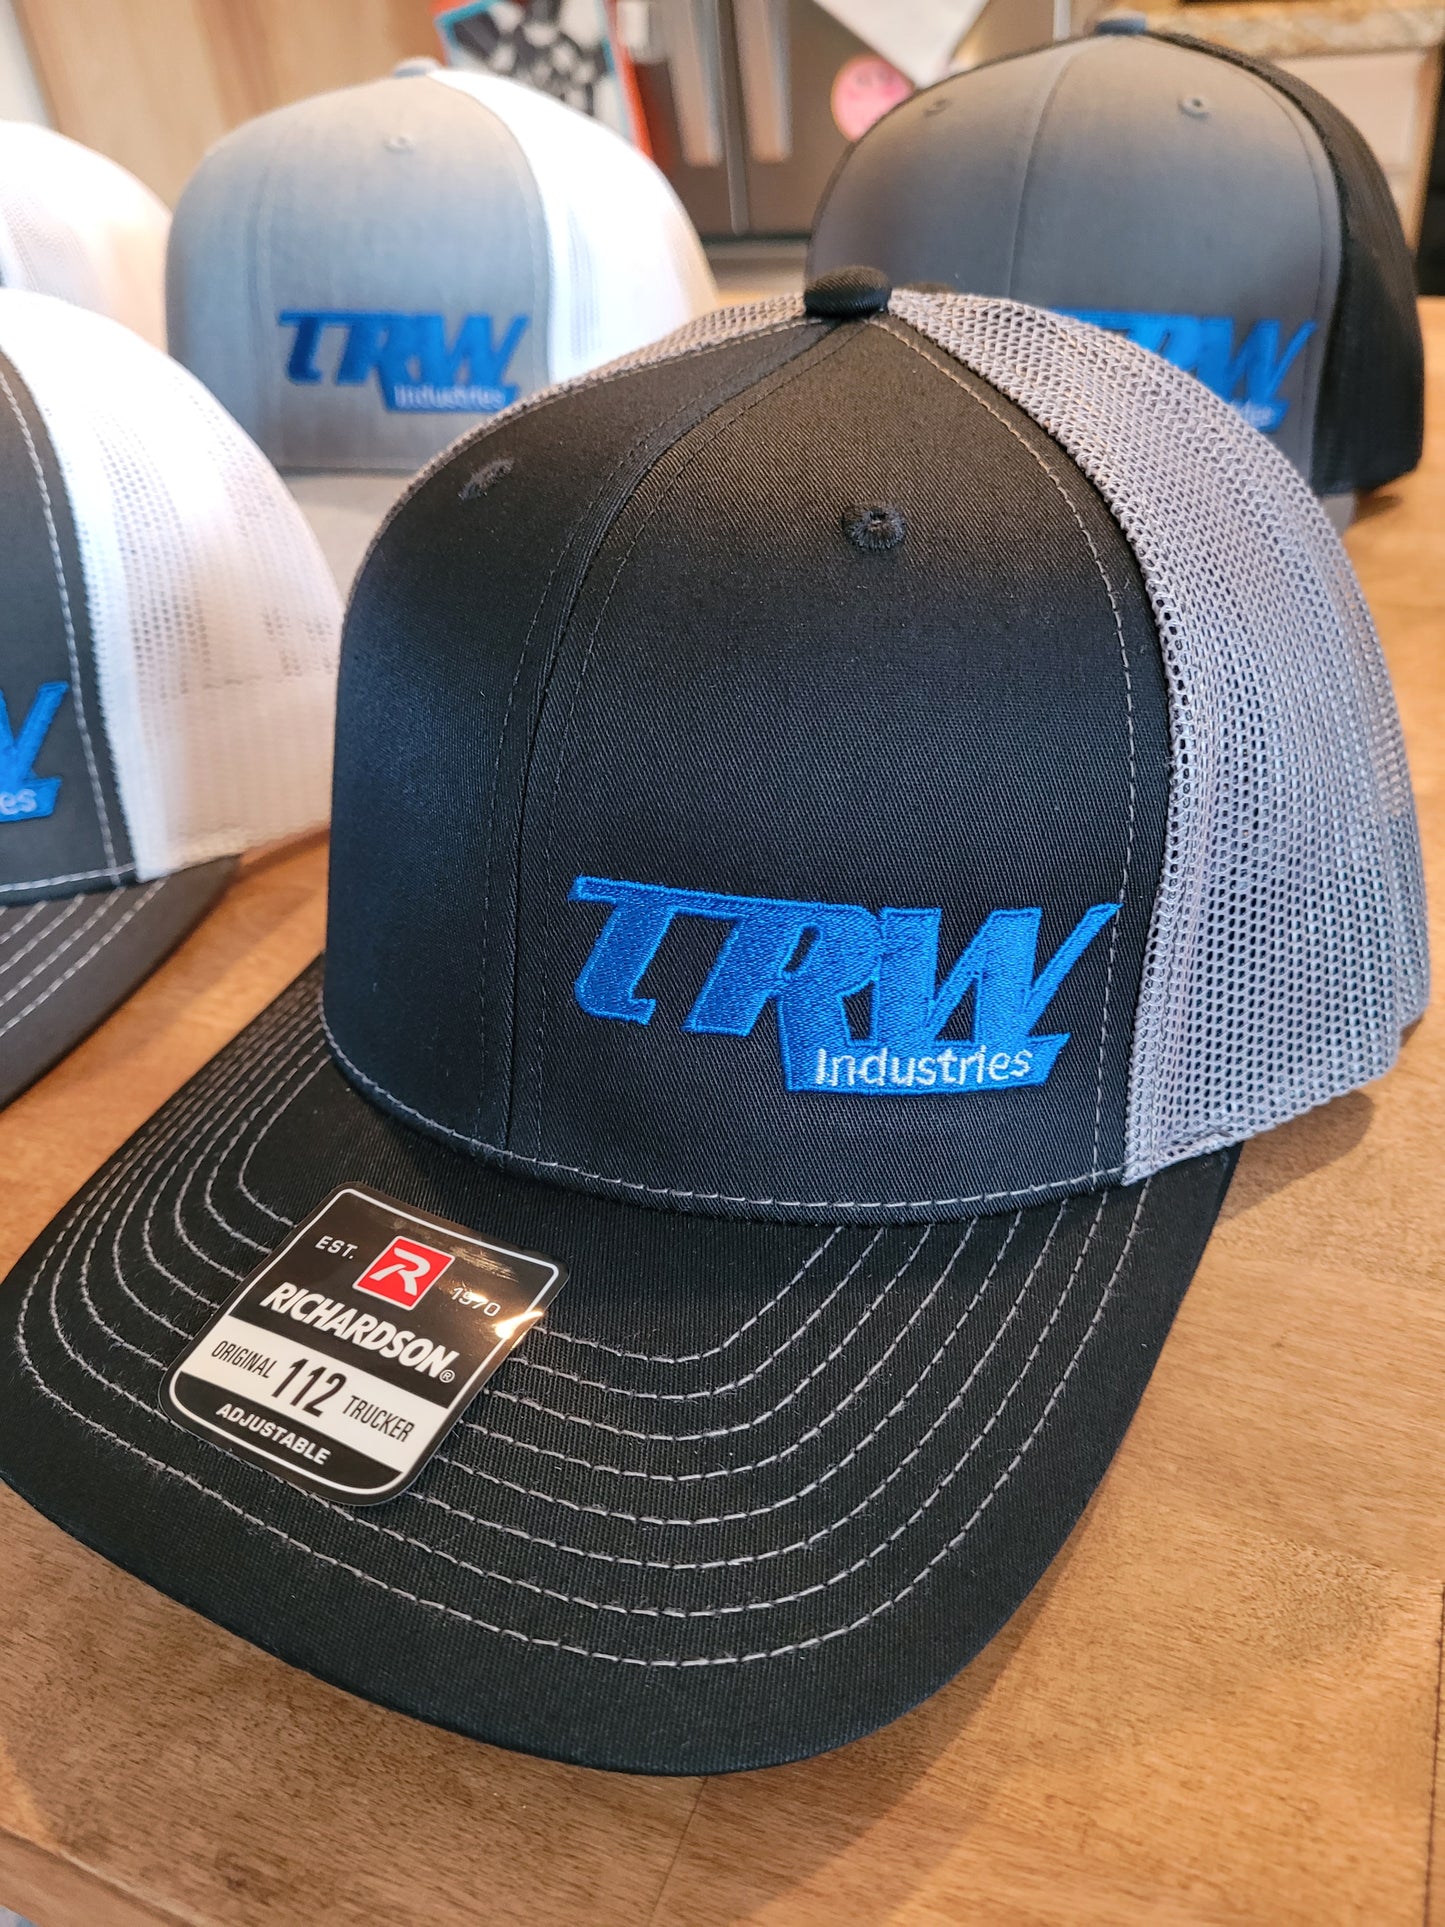 1 - TRW Industries Hats